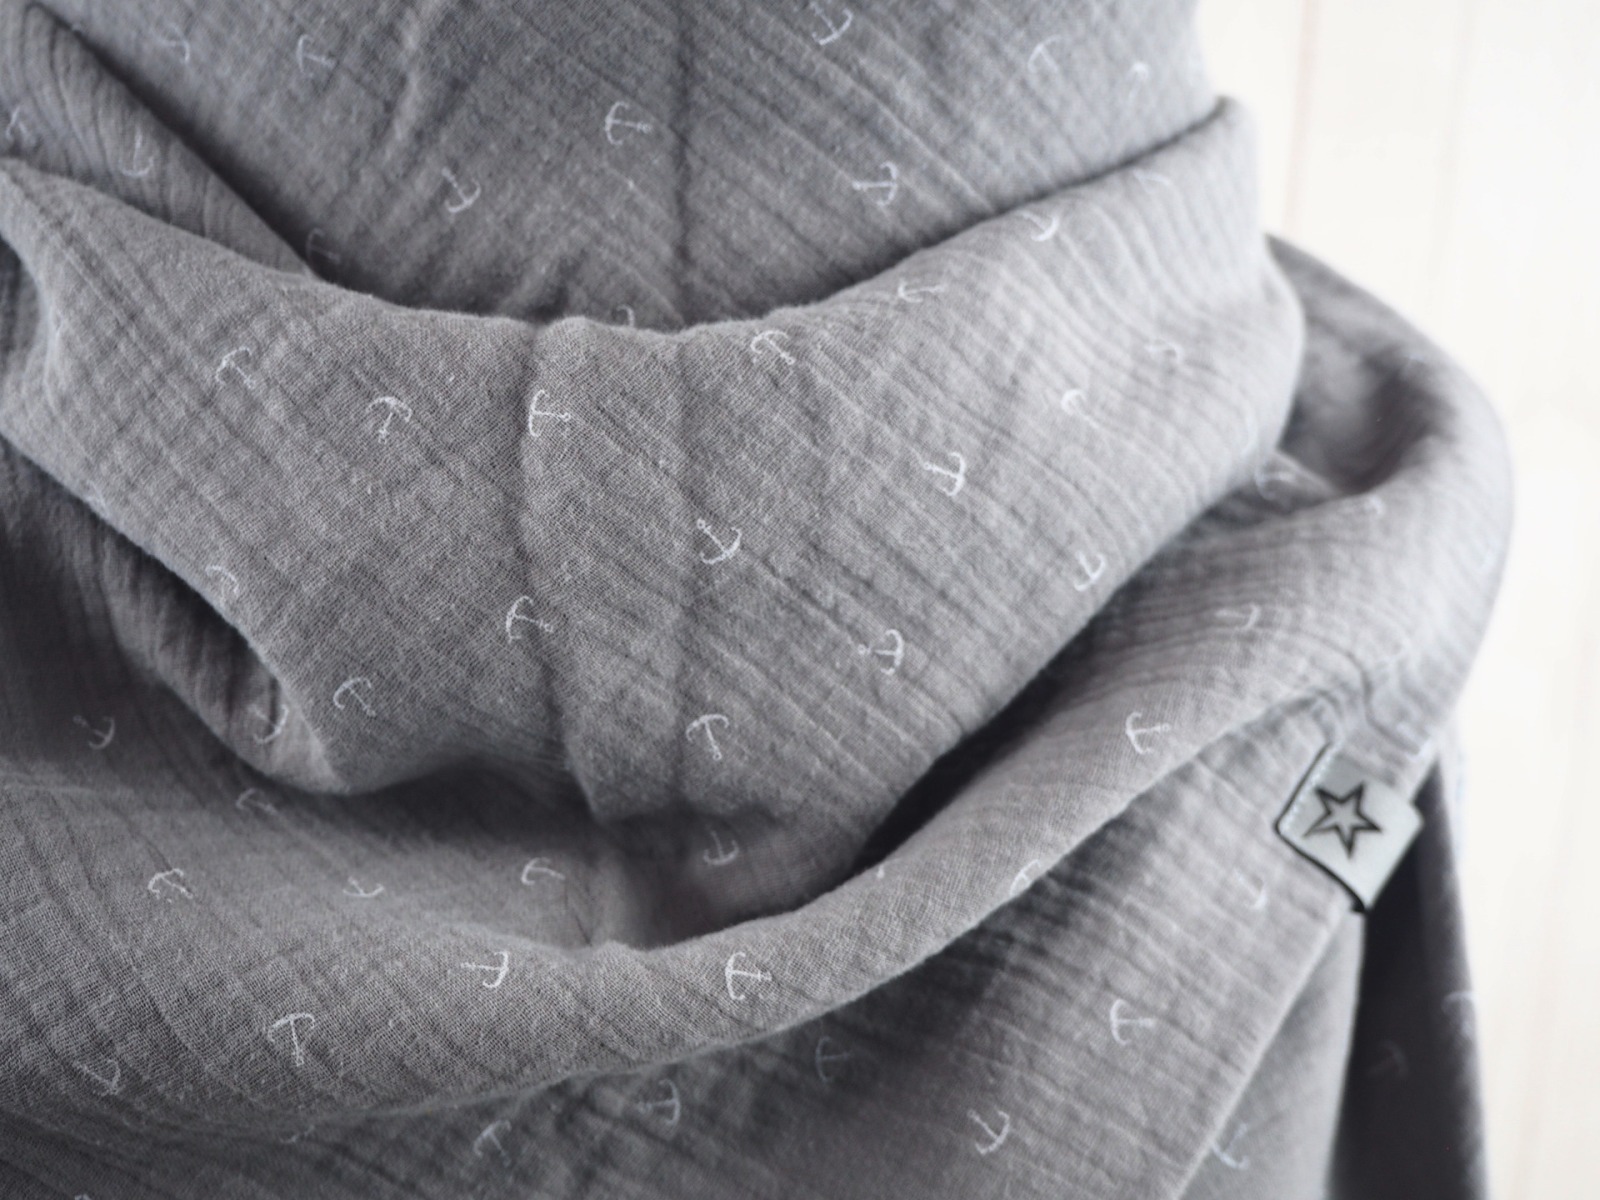 Tuch Anker - Dreieckstuch Musselin Damen - Schal grau mit Ankern in weiß - XXL Tuch aus Baumwolle